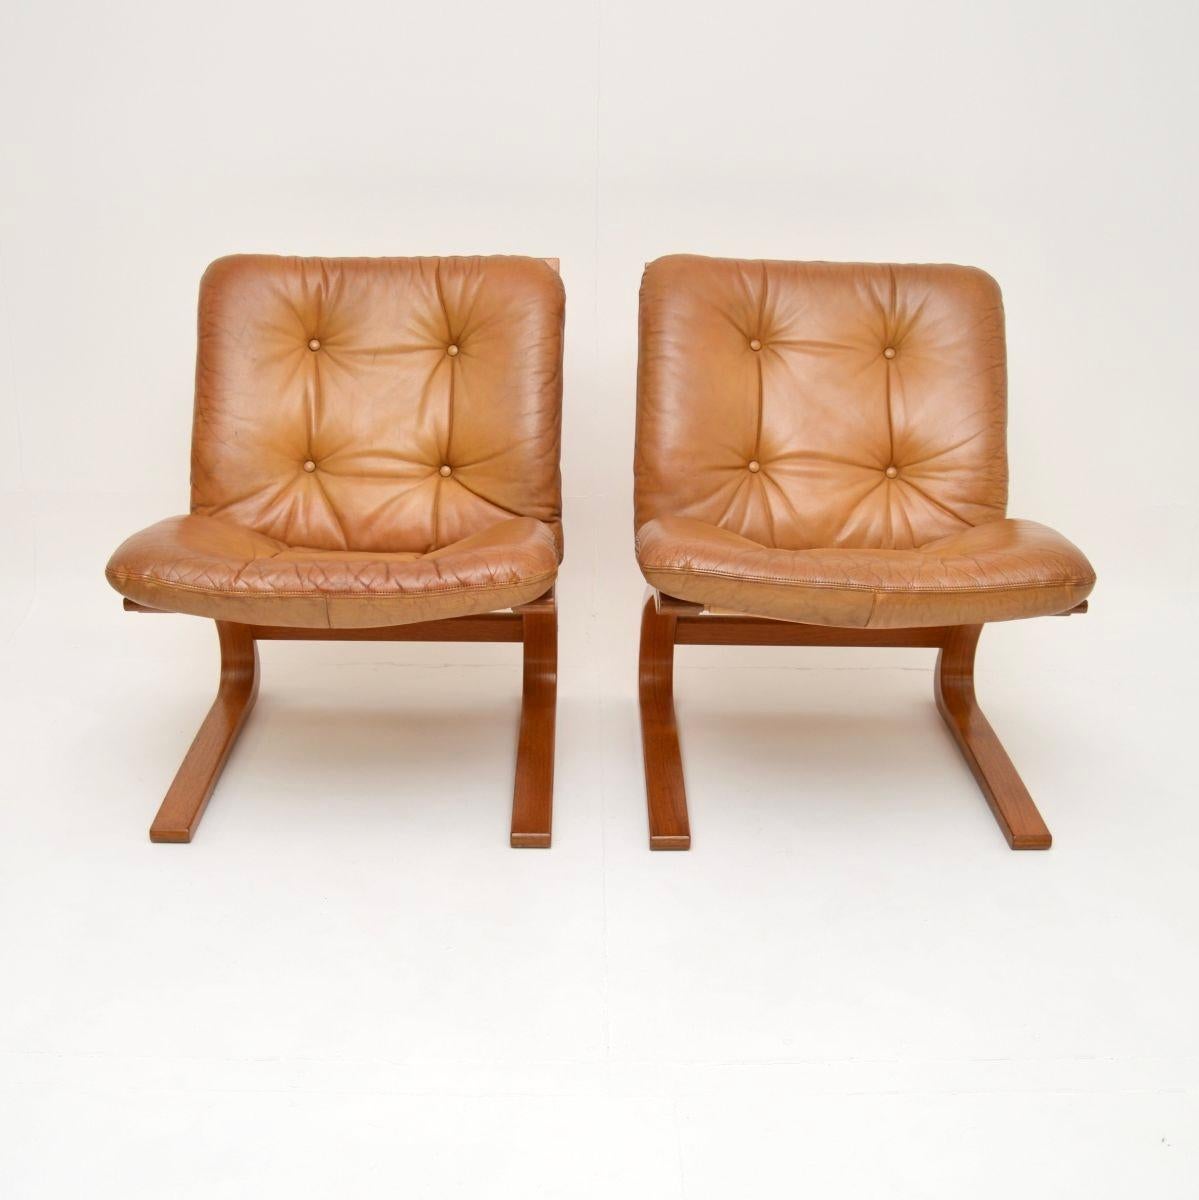 Une paire de chaises Kengu en cuir vintage, élégante et extrêmement confortable, créée par Elsa et Nordahl Solheim pour Rykken. Fabriqués en Norvège, ils datent des années 1970.

La qualité est exceptionnelle, ils sont magnifiquement conçus et il